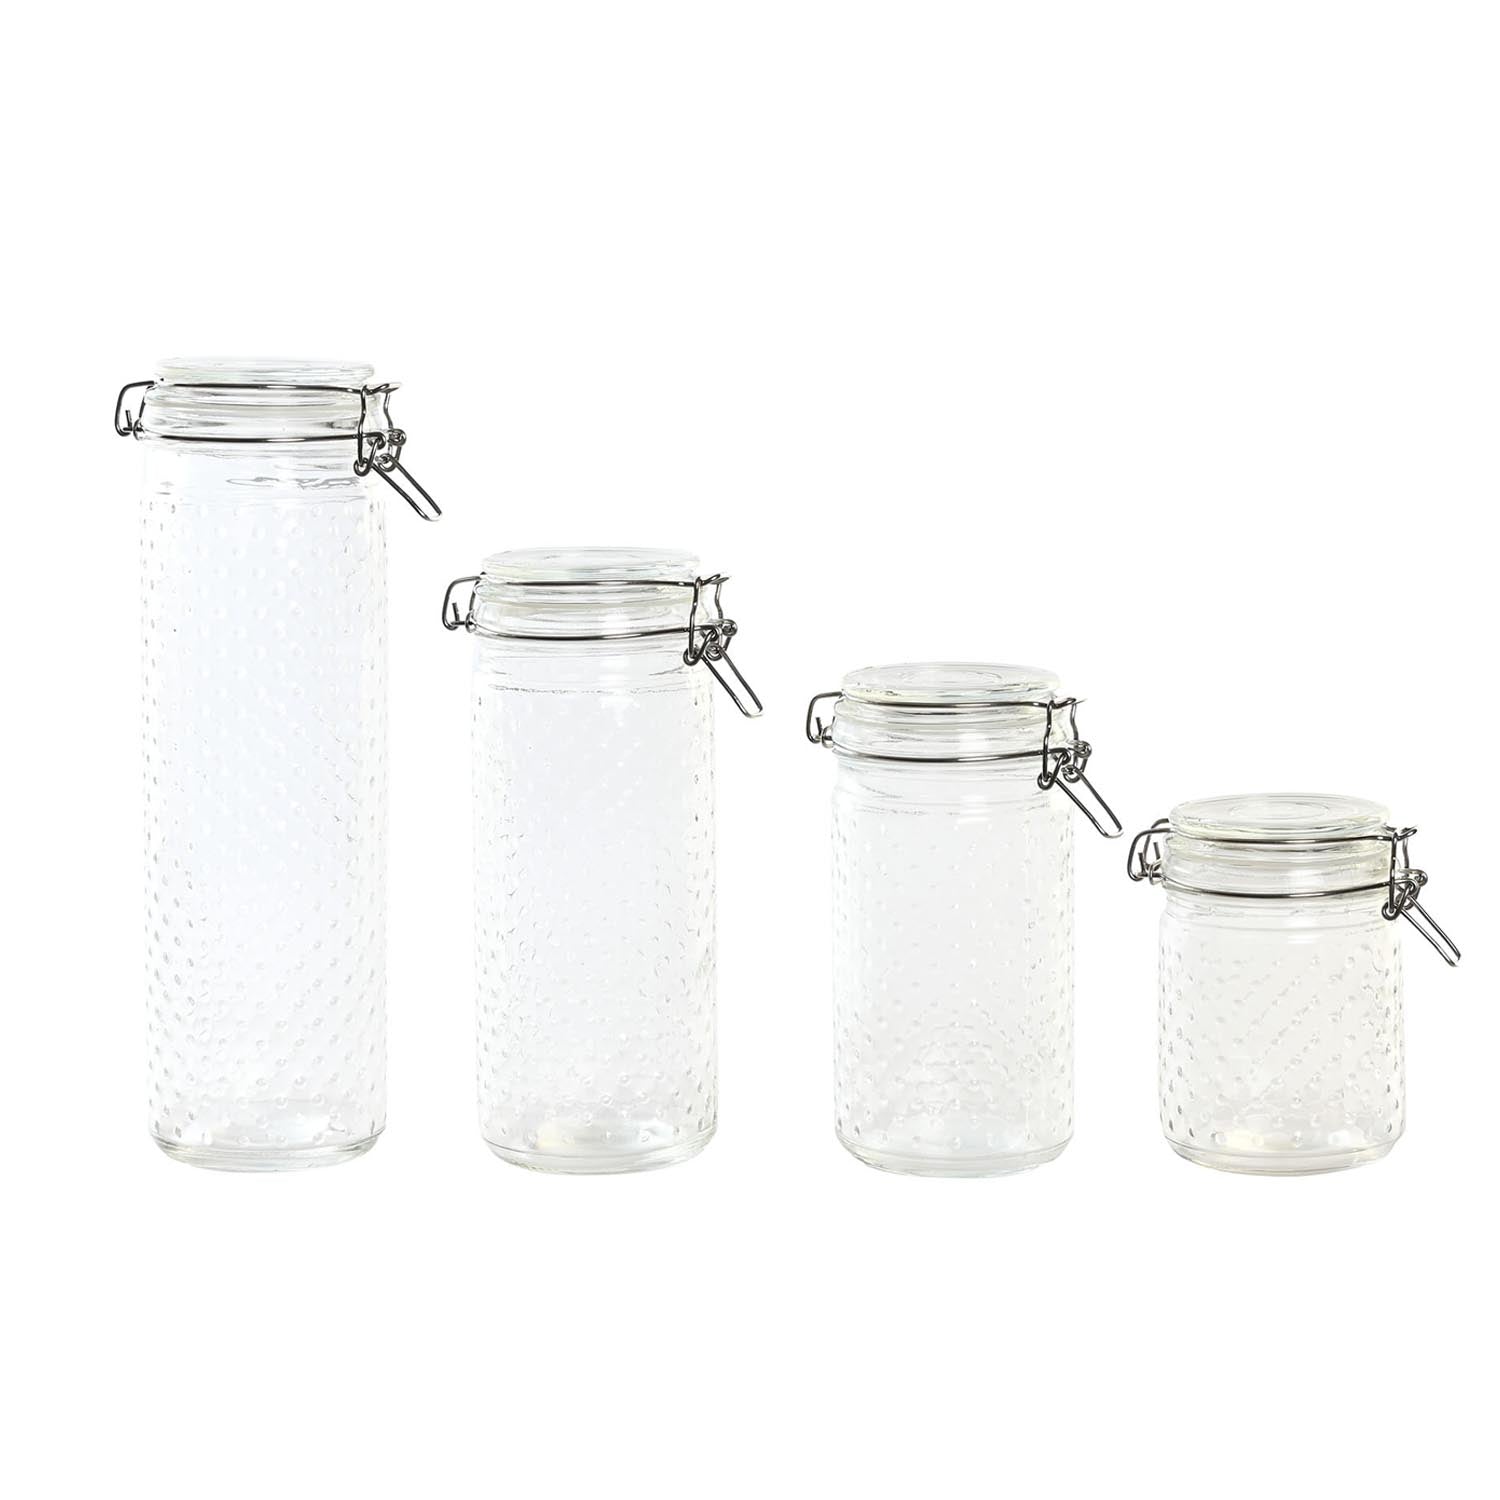 Glass jars set